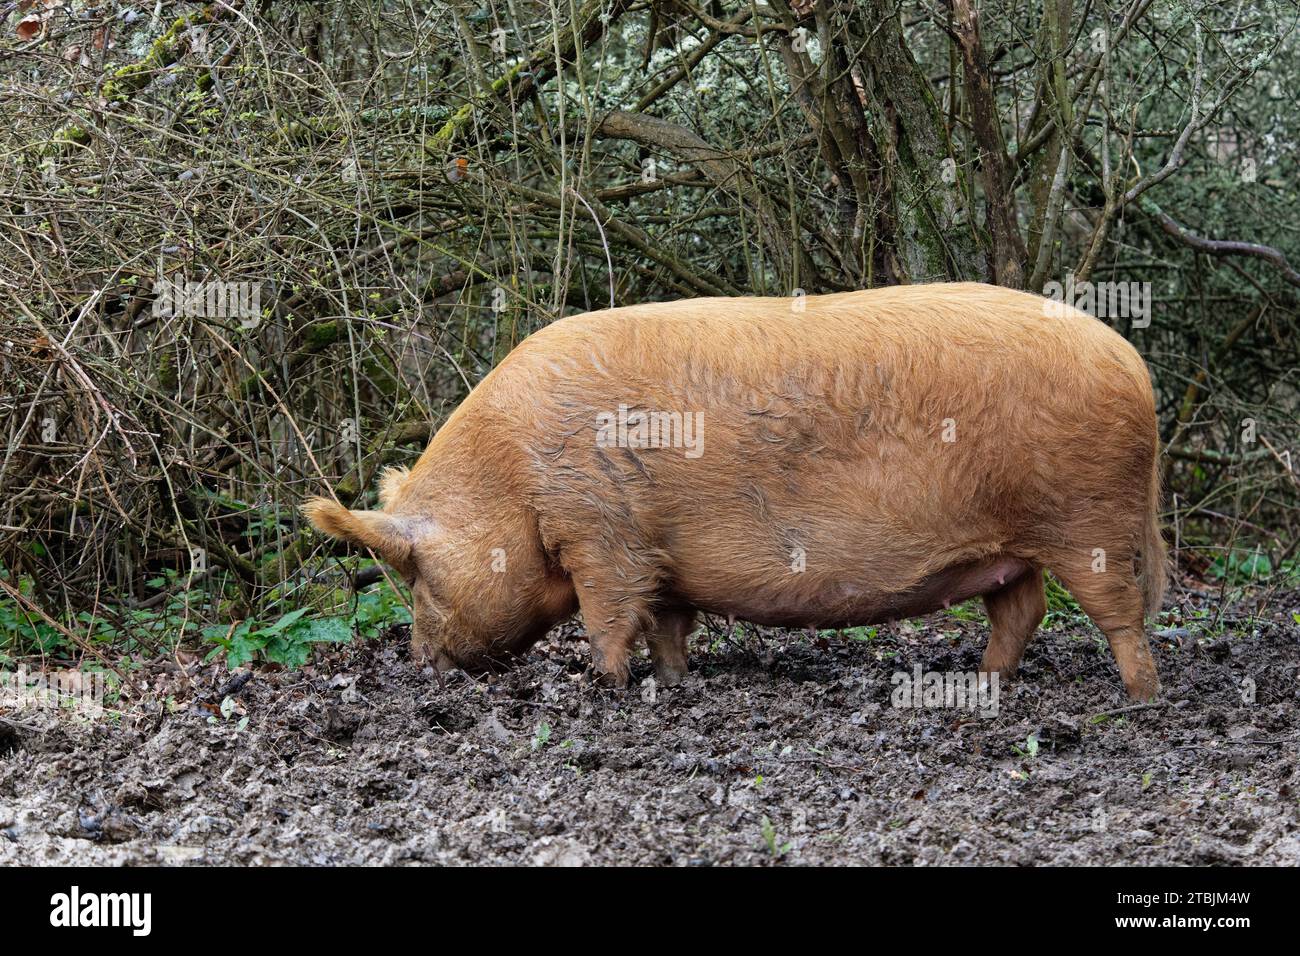 Porc Tamworth (sus domesticus) enraciné avec son museau pour la nourriture, y compris des glands tombés dans des bois boueux, Knepp Estate, Sussex, Royaume-Uni, mars. Banque D'Images